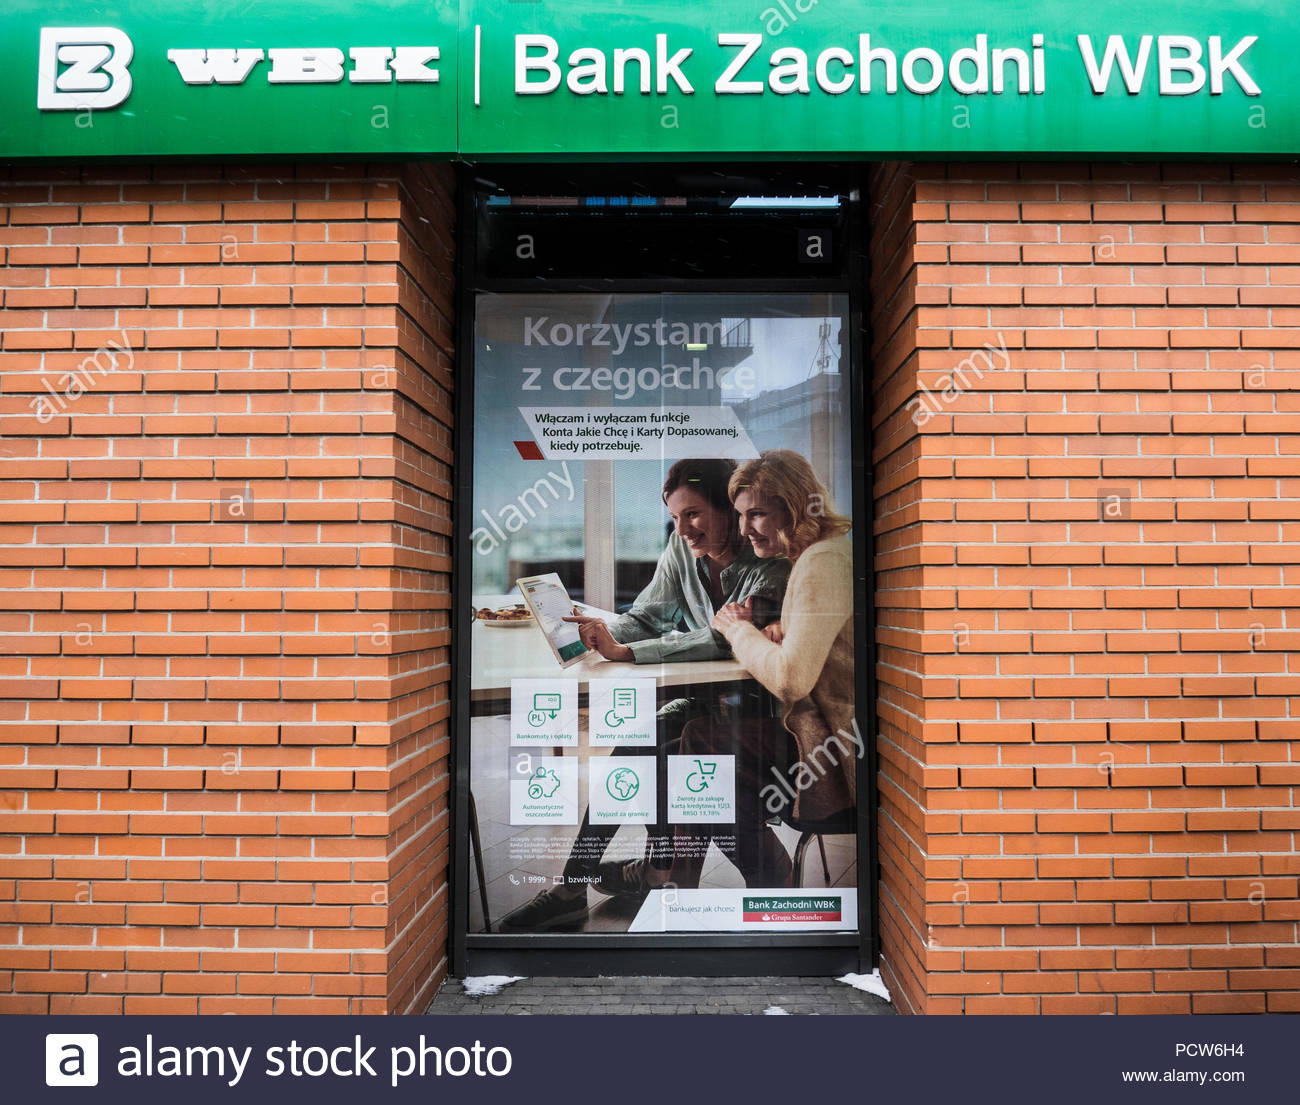 Надежный и успешный польский банк zachodni wbk